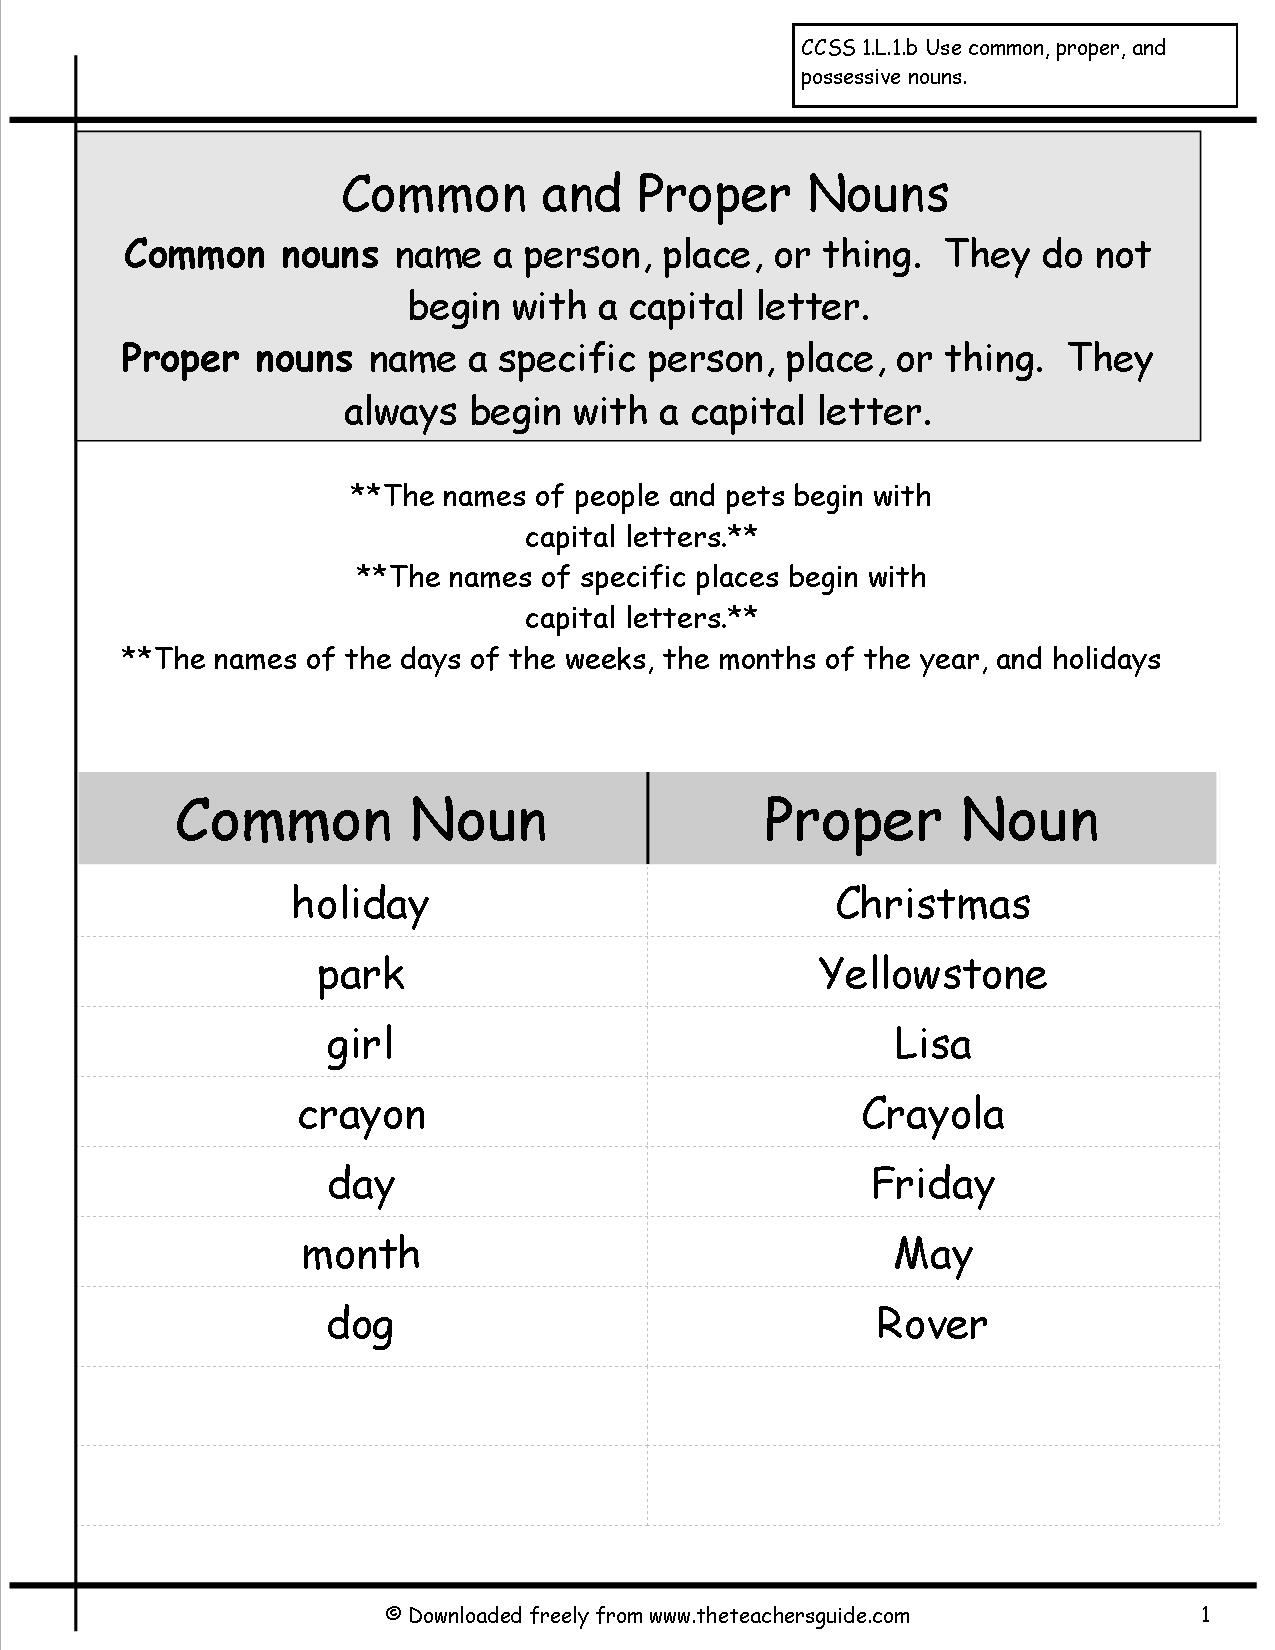 Noun And Proper Noun Worksheets